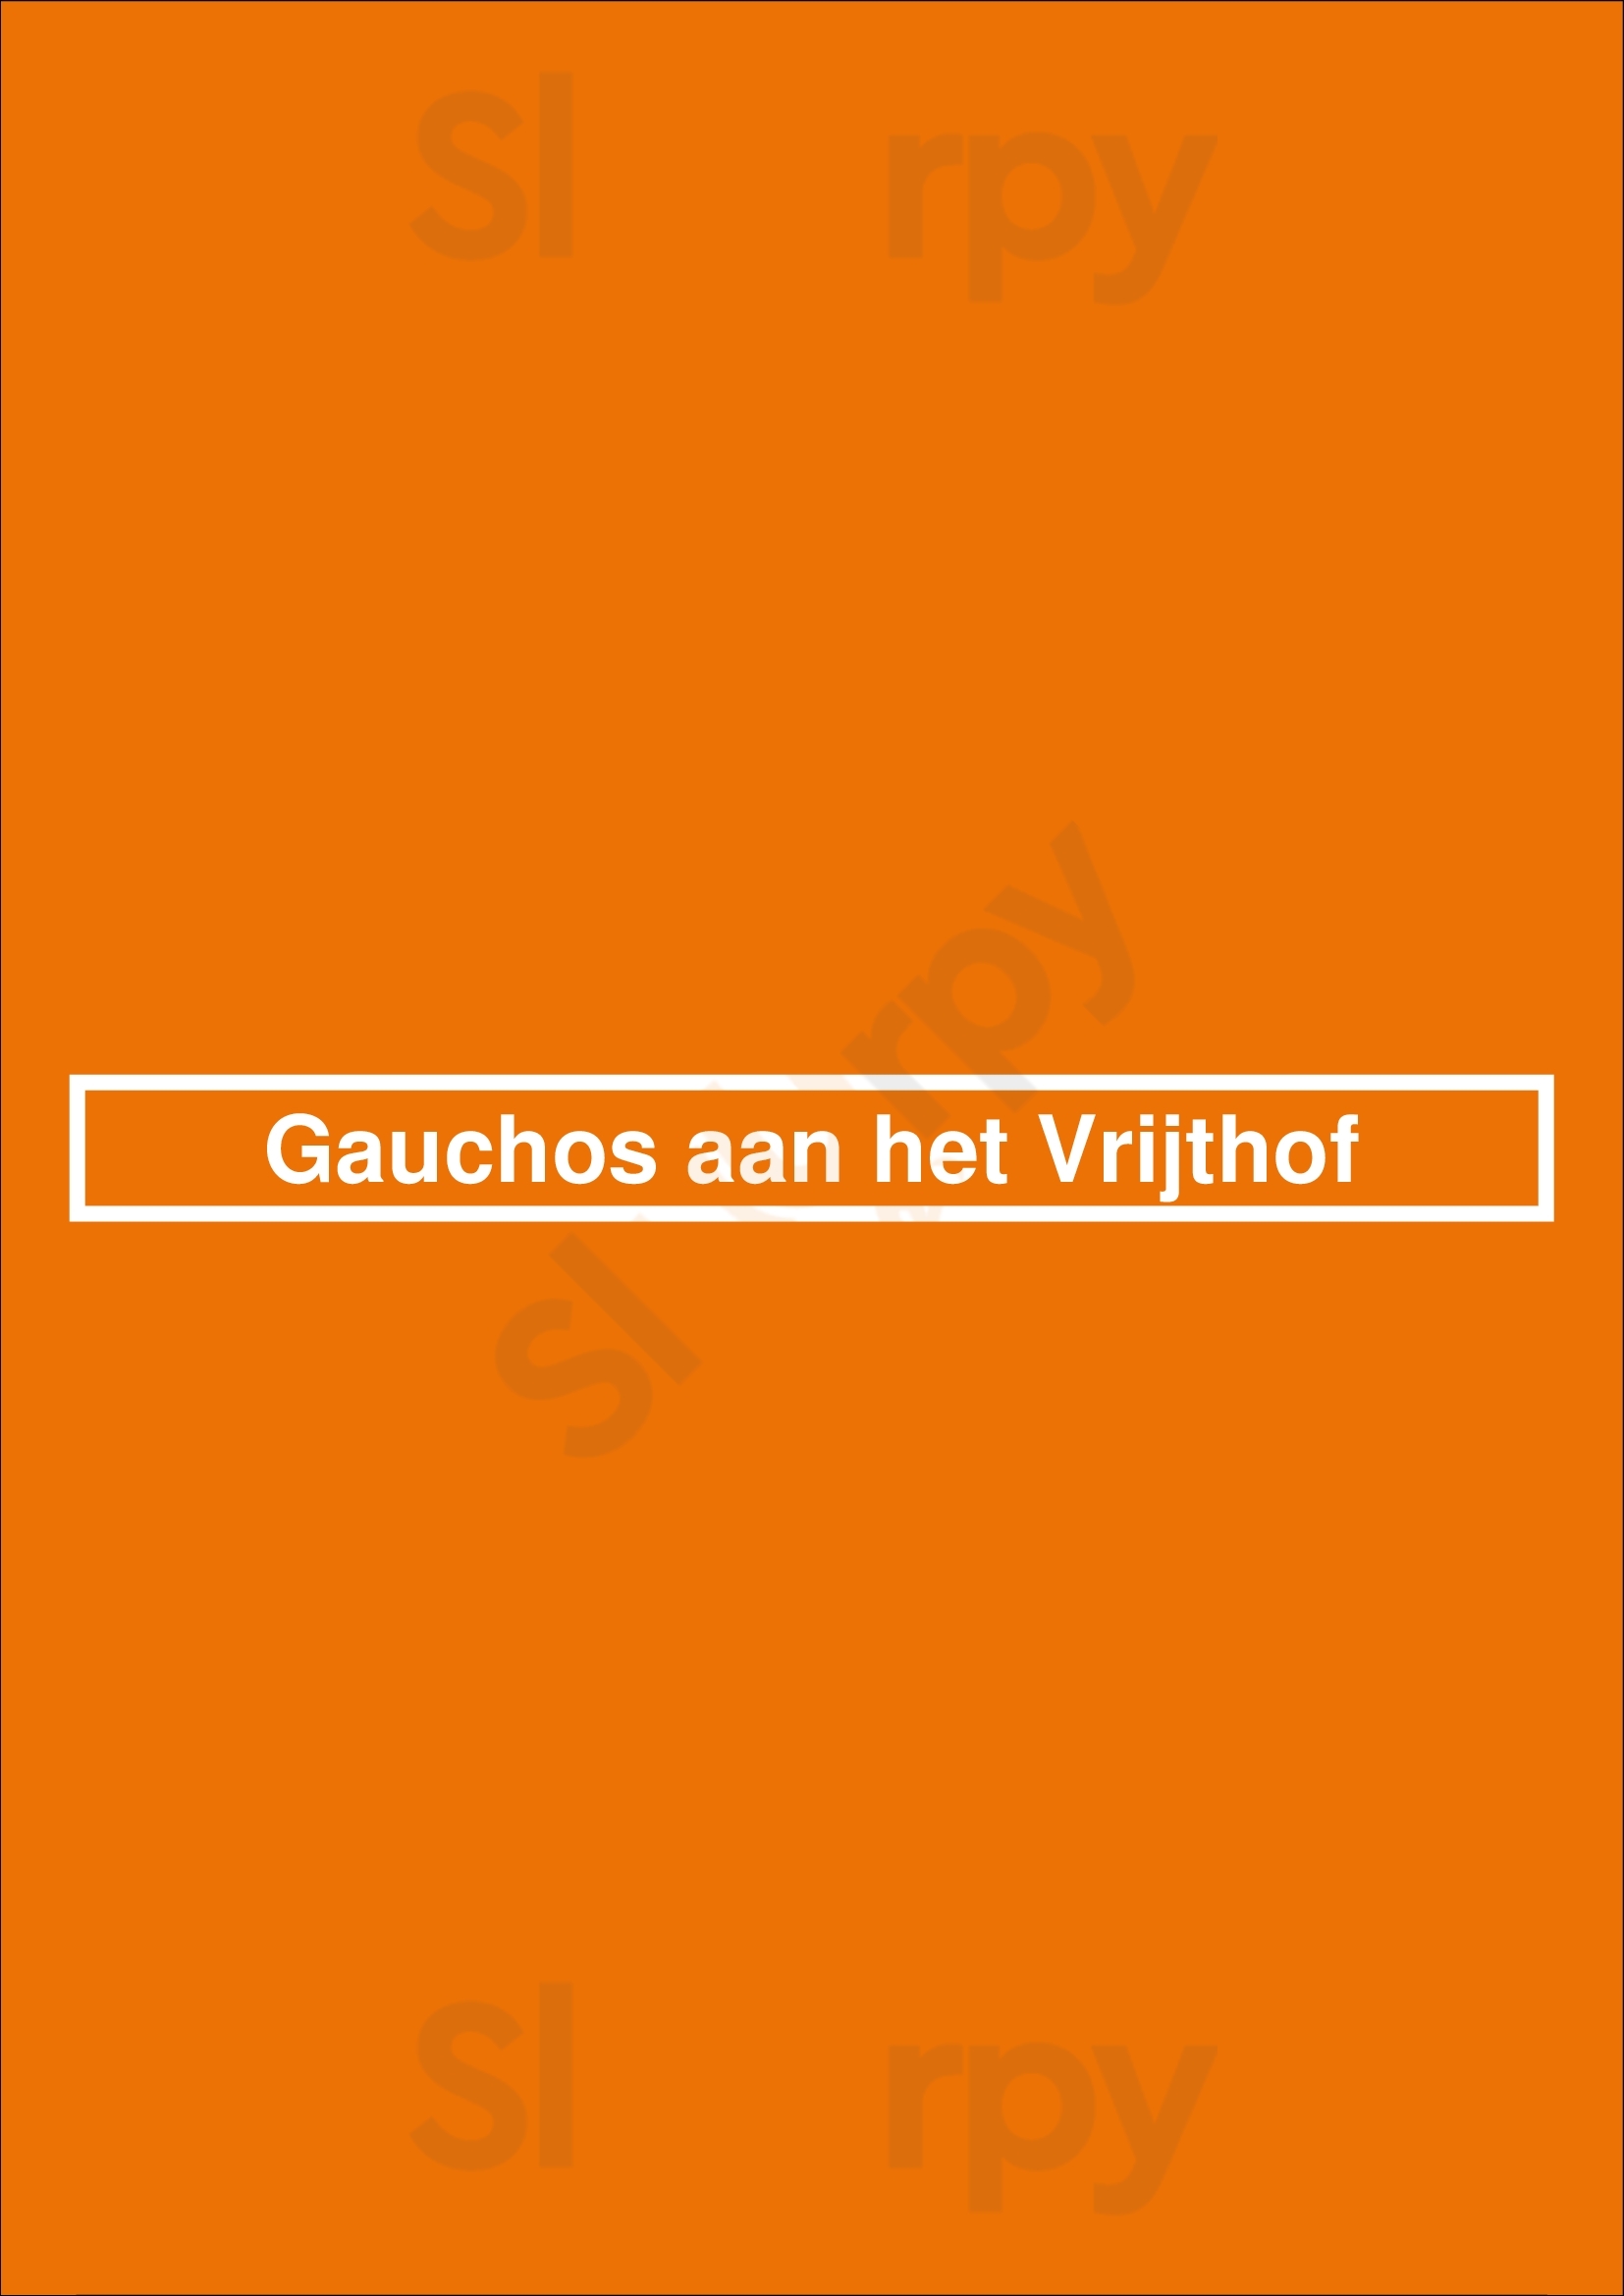 Gauchos Aan Het Vrijthof Maastricht Menu - 1